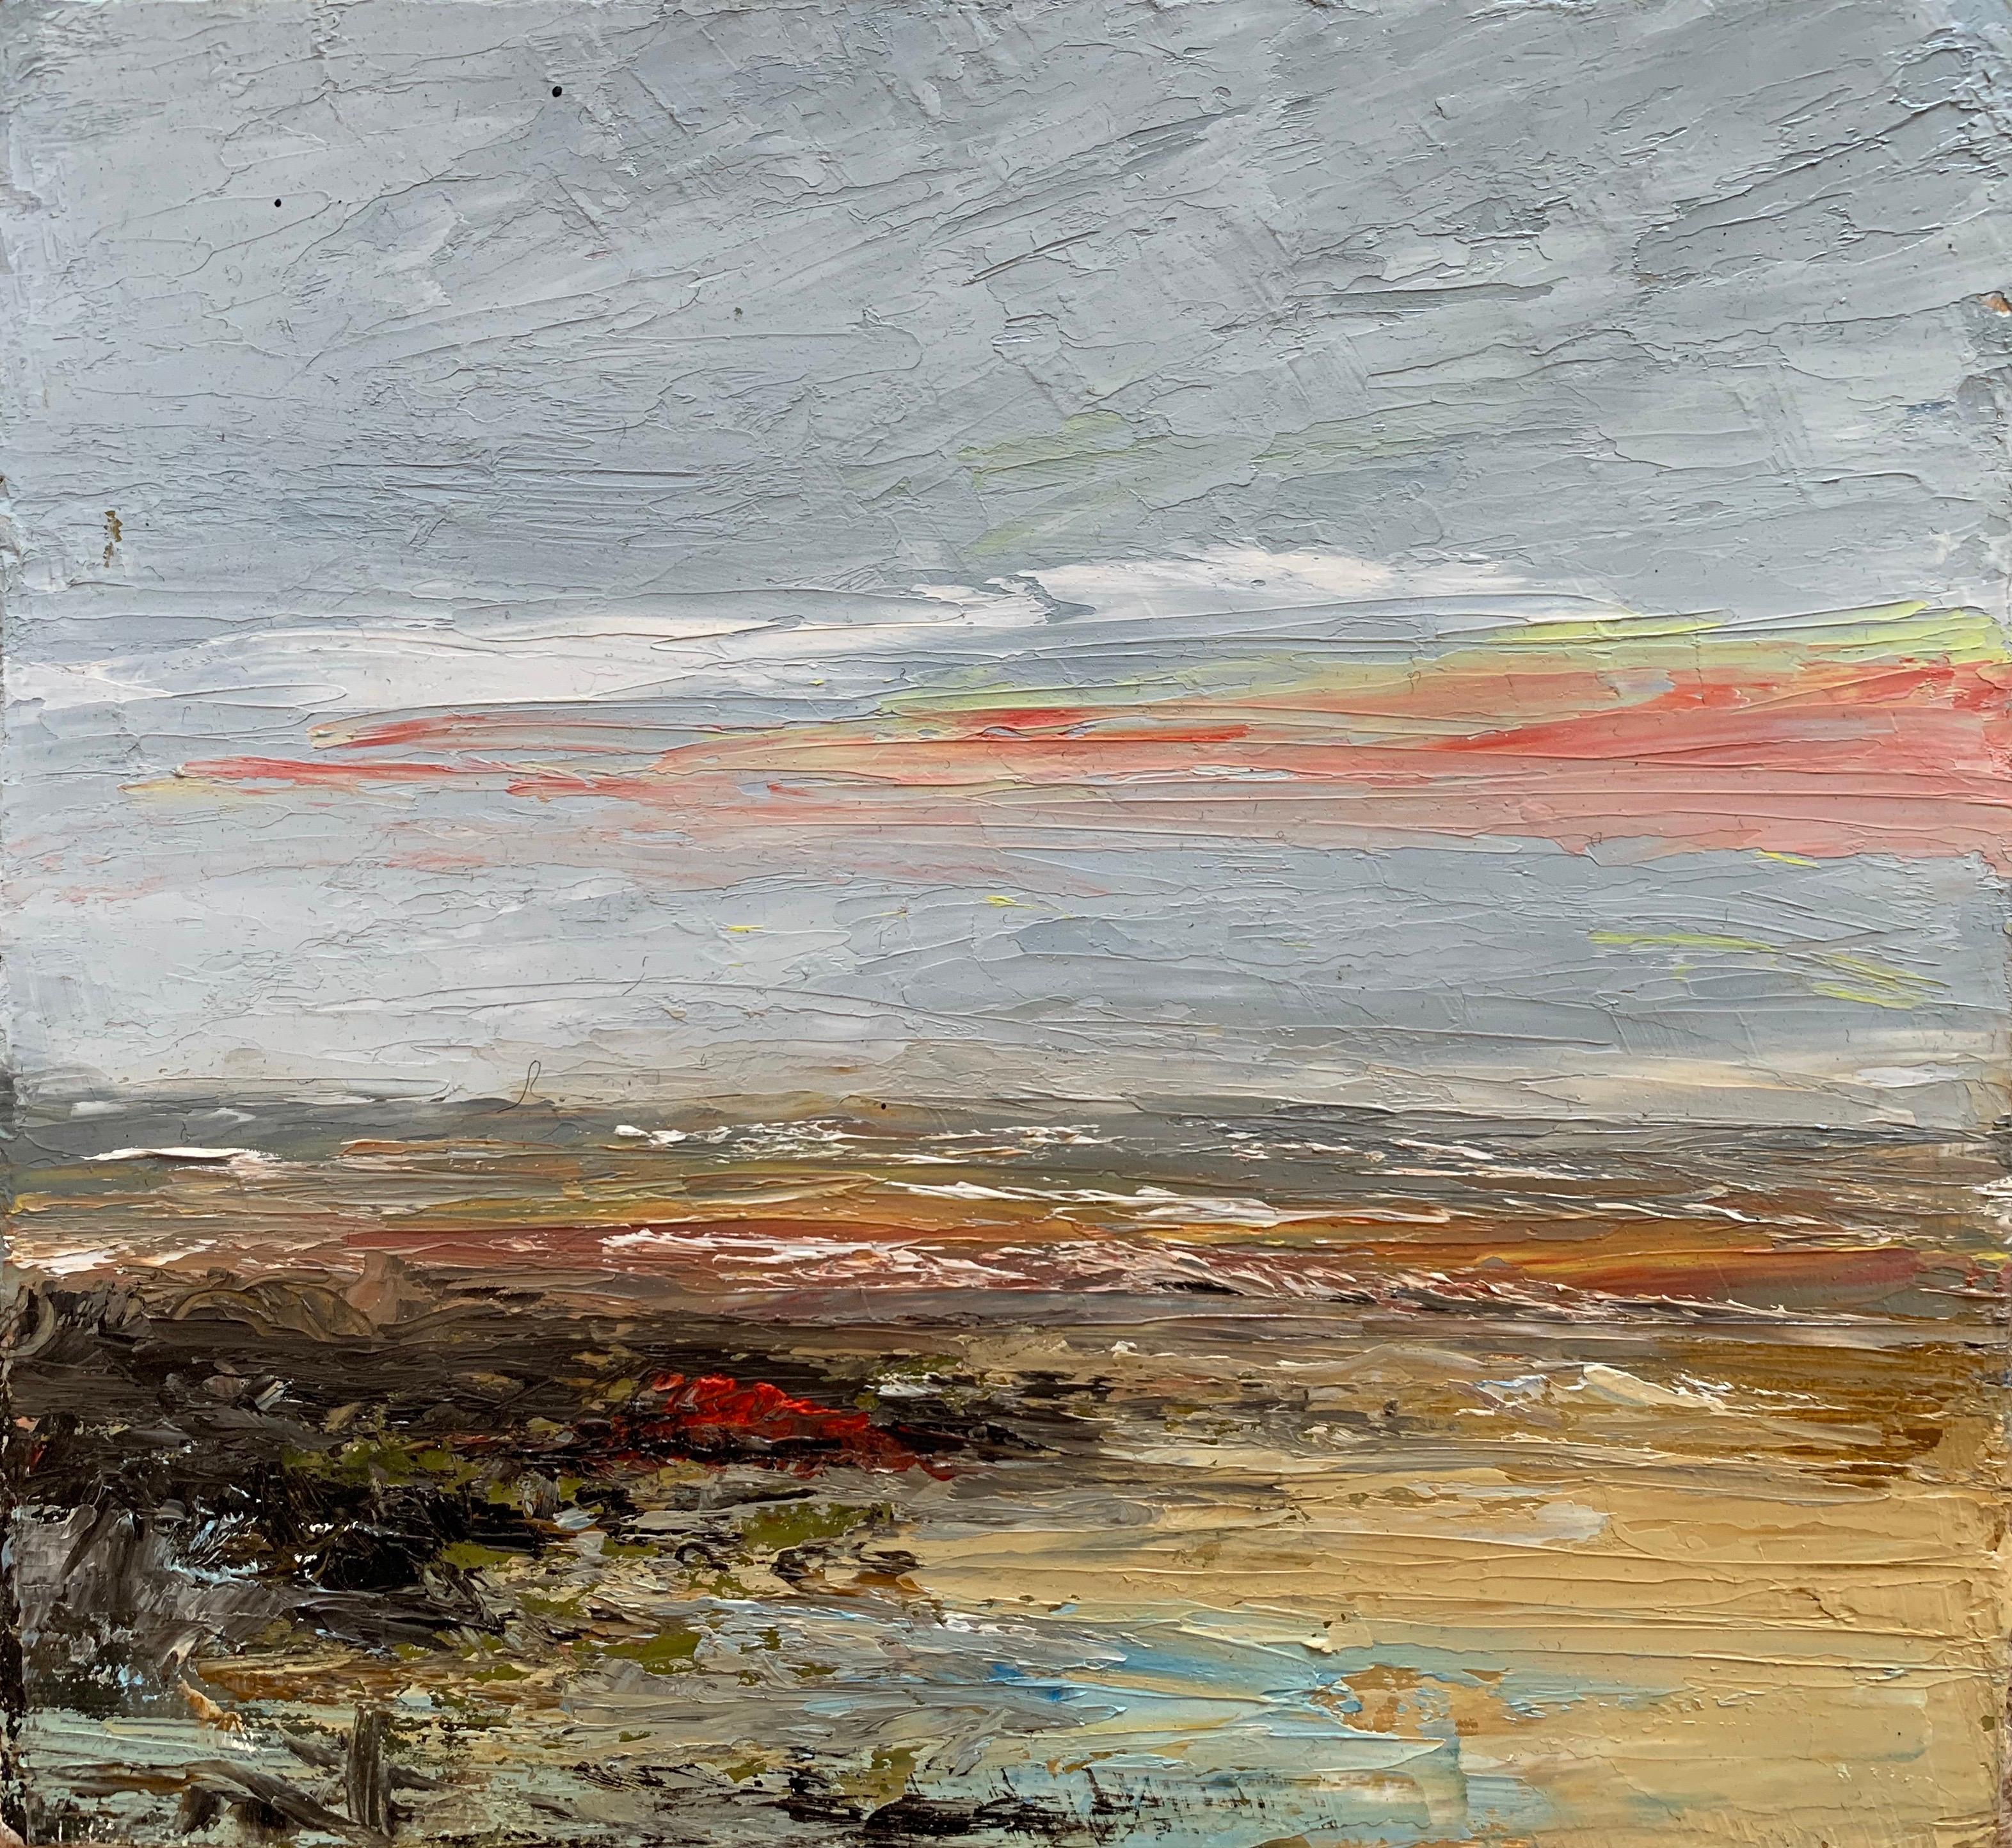 Peinture à l'huile impressionniste française représentant un coucher de soleil sur des vagues ondulantes et des sables dorés